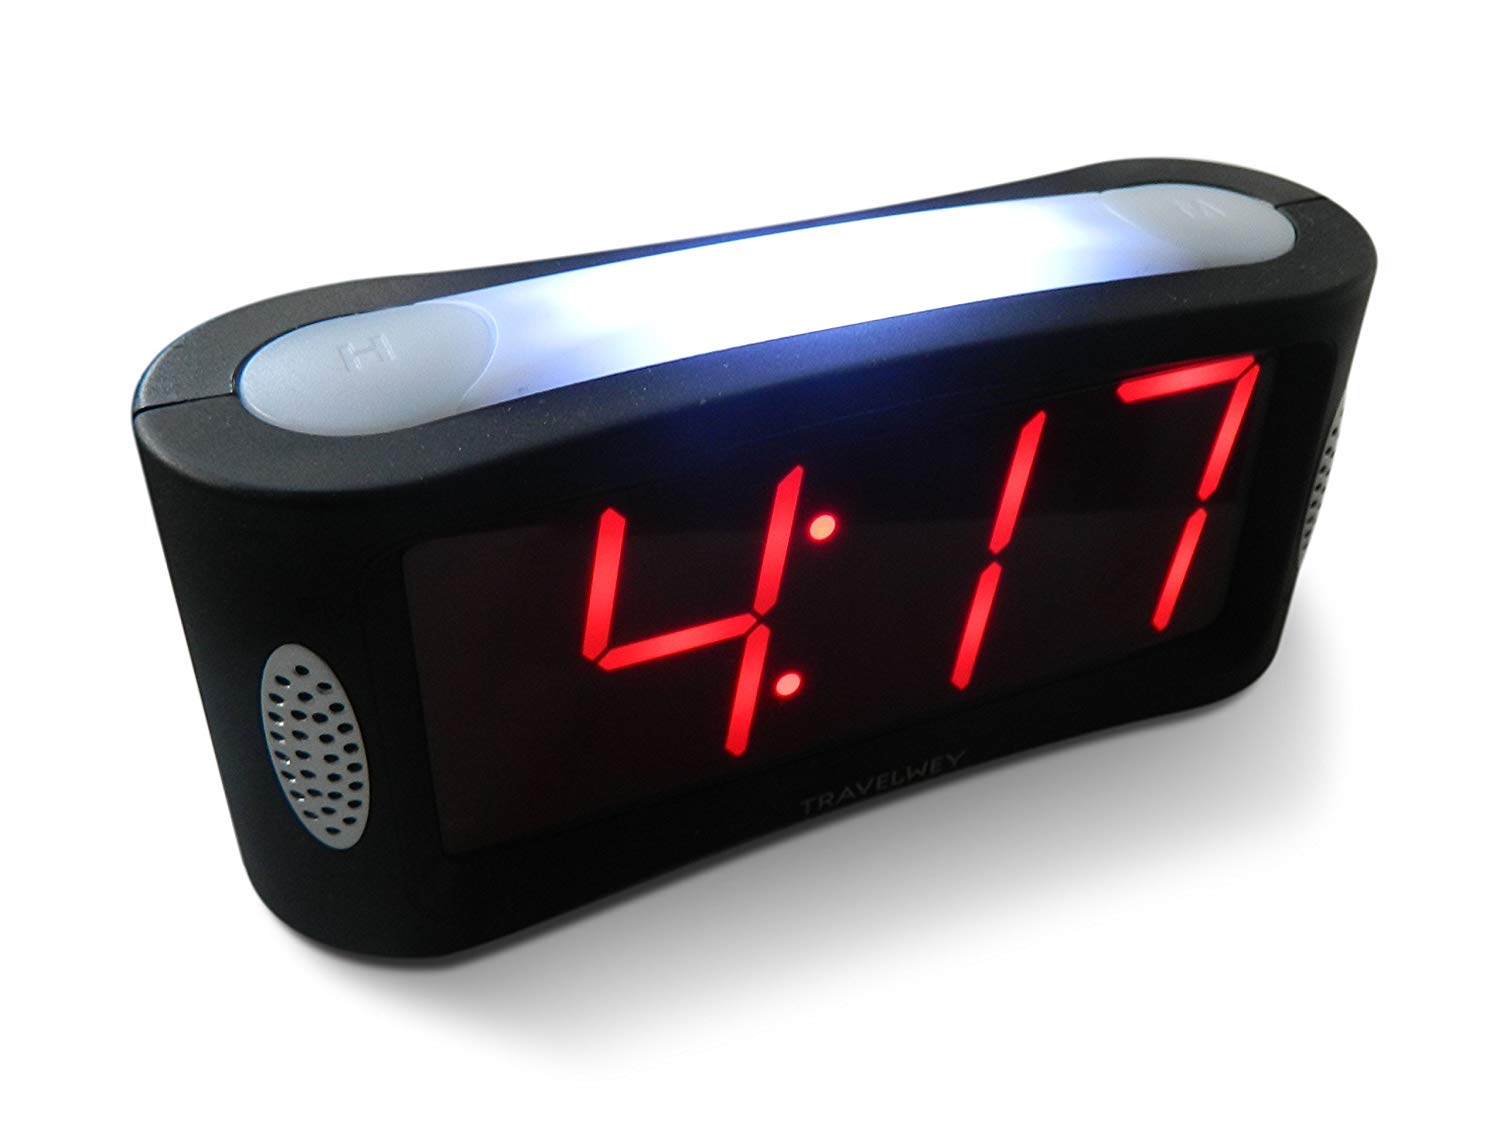  Alarm clock